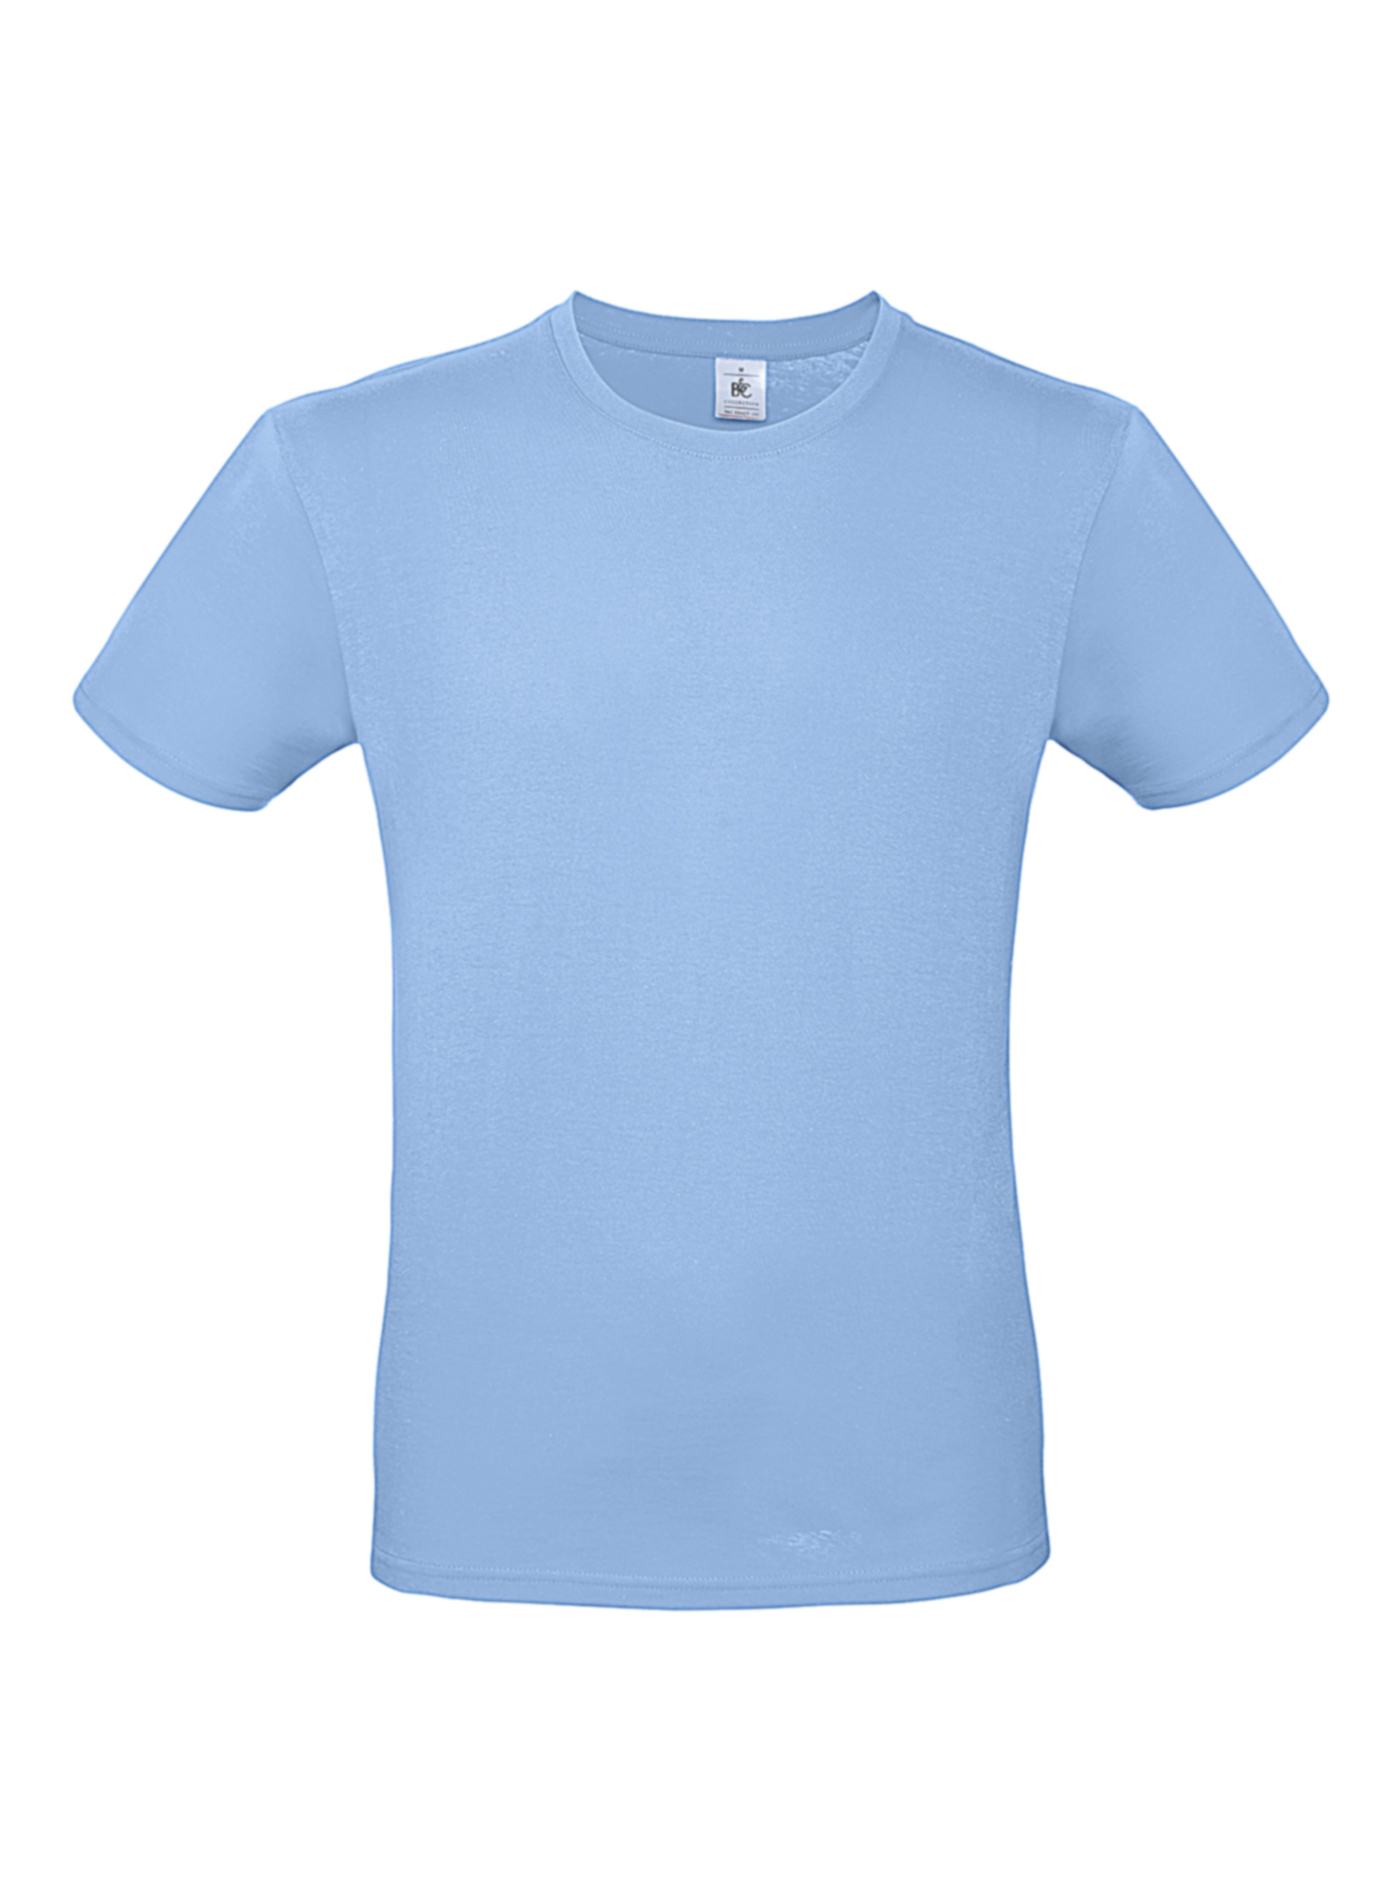 Pánské tričko B&C - Blankytně modrá S